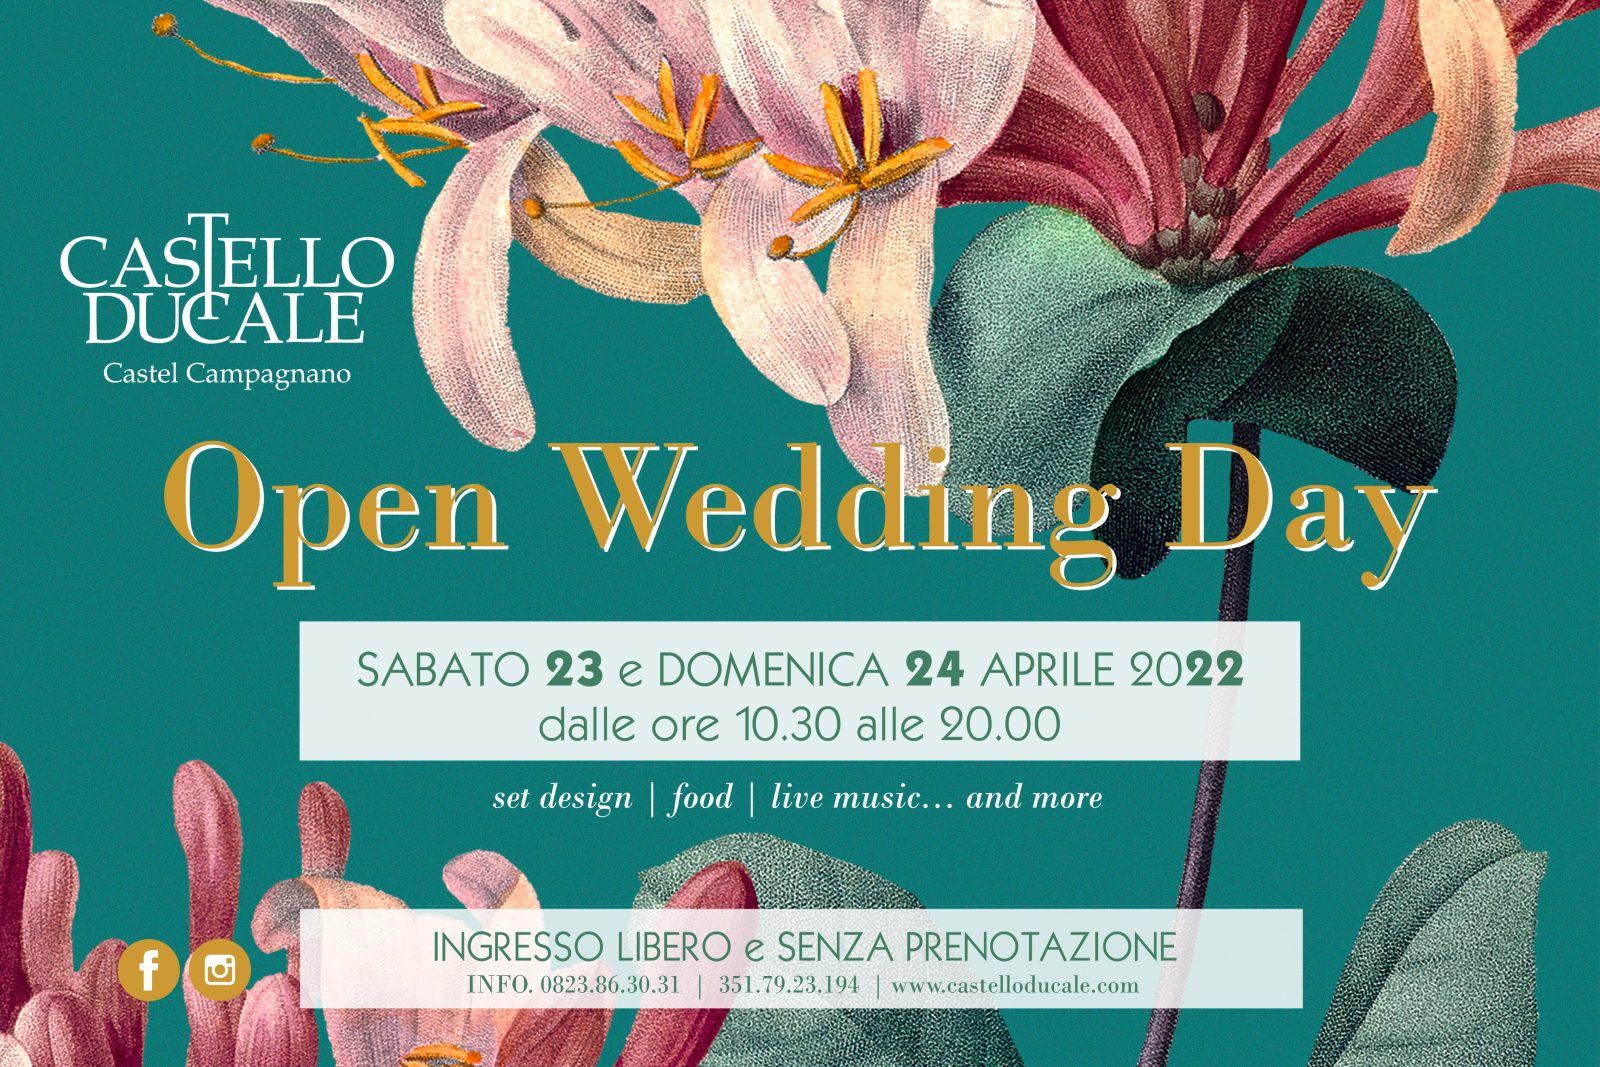 Il 23 e 24 aprile al Castello Ducale Castel Campagnano l’Open Wedding Day